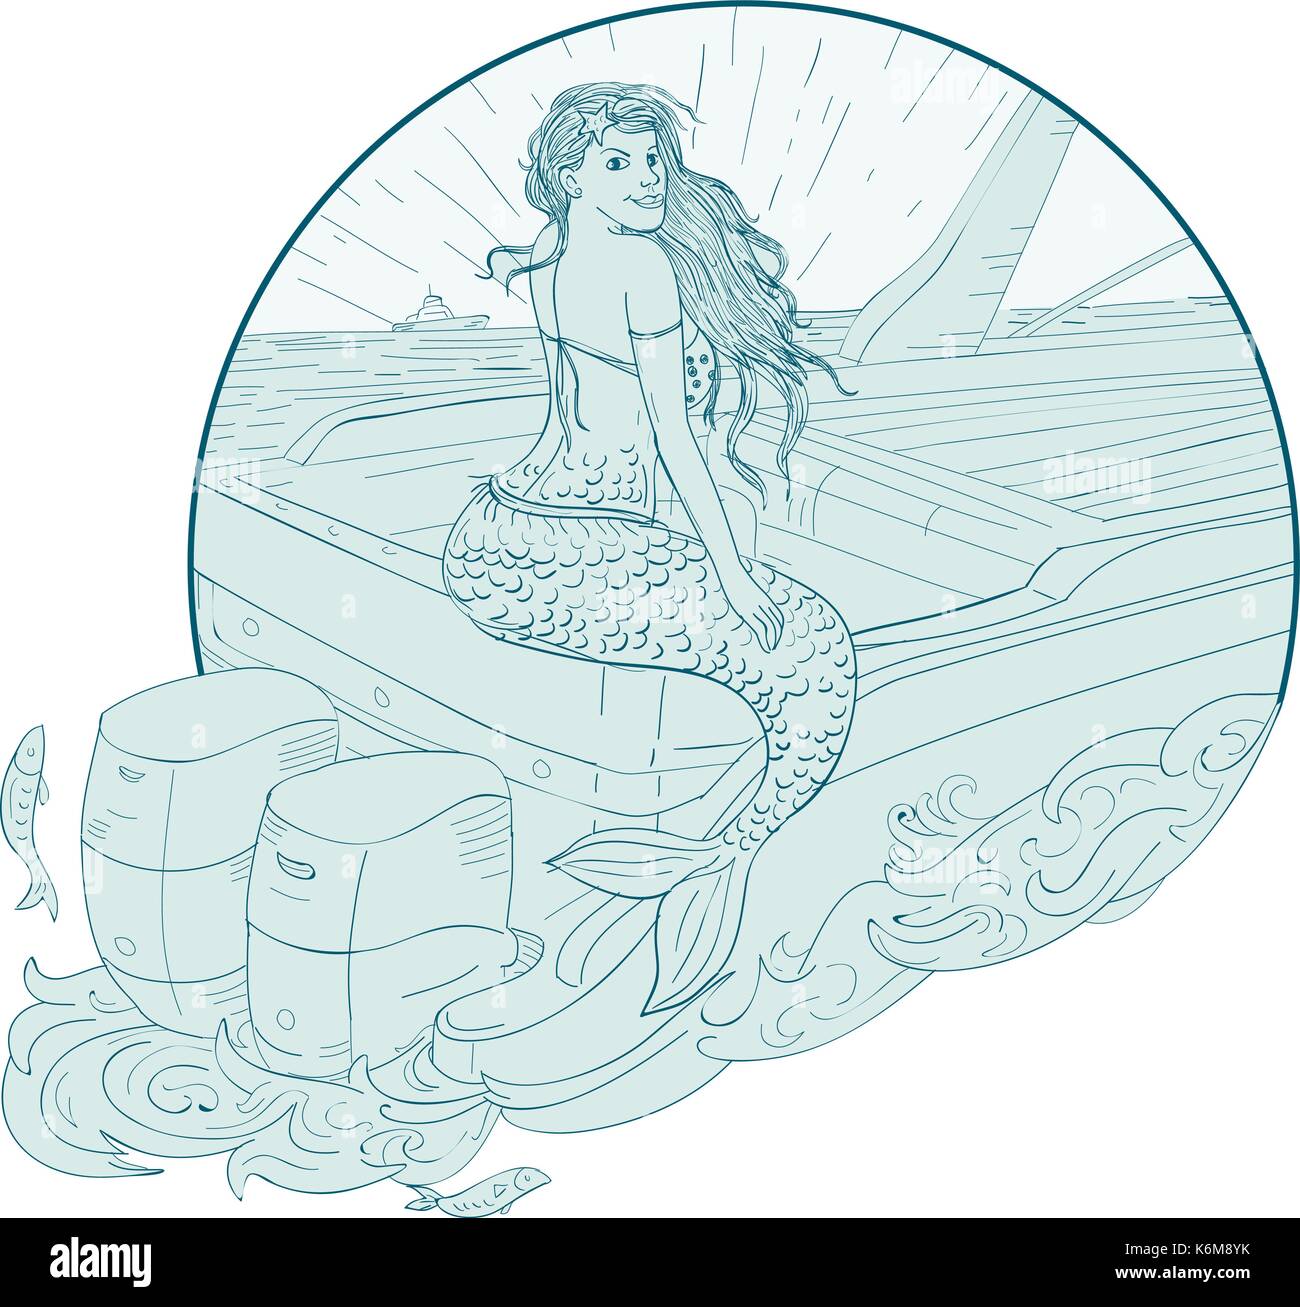 Zeichnung Skizze stil Abbildung einer Meerjungfrau sirene Sitzen auf Boot Heckmontage innerhalb des Kreises auf isolierten Hintergrund gesetzt. Stock Vektor